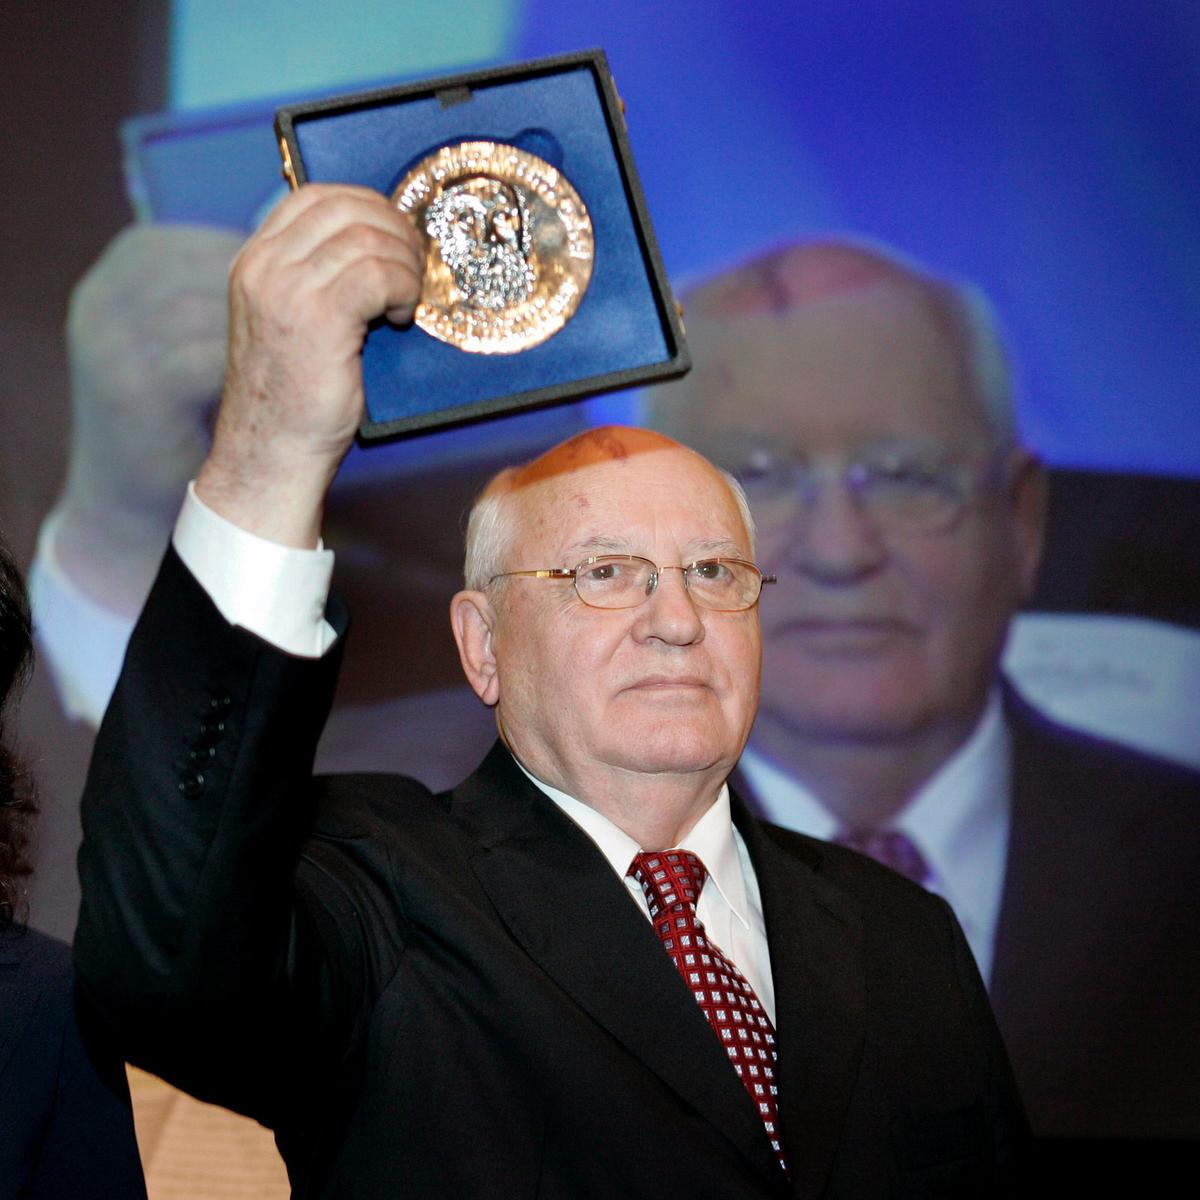 Михаил Горбачев, бывший президент Советского Союза, держит значок Мартина Бубера в Керкраде, Нидерланды, 14 ноября 2008 года. Фото: EPA/MARCEL VAN HOORN